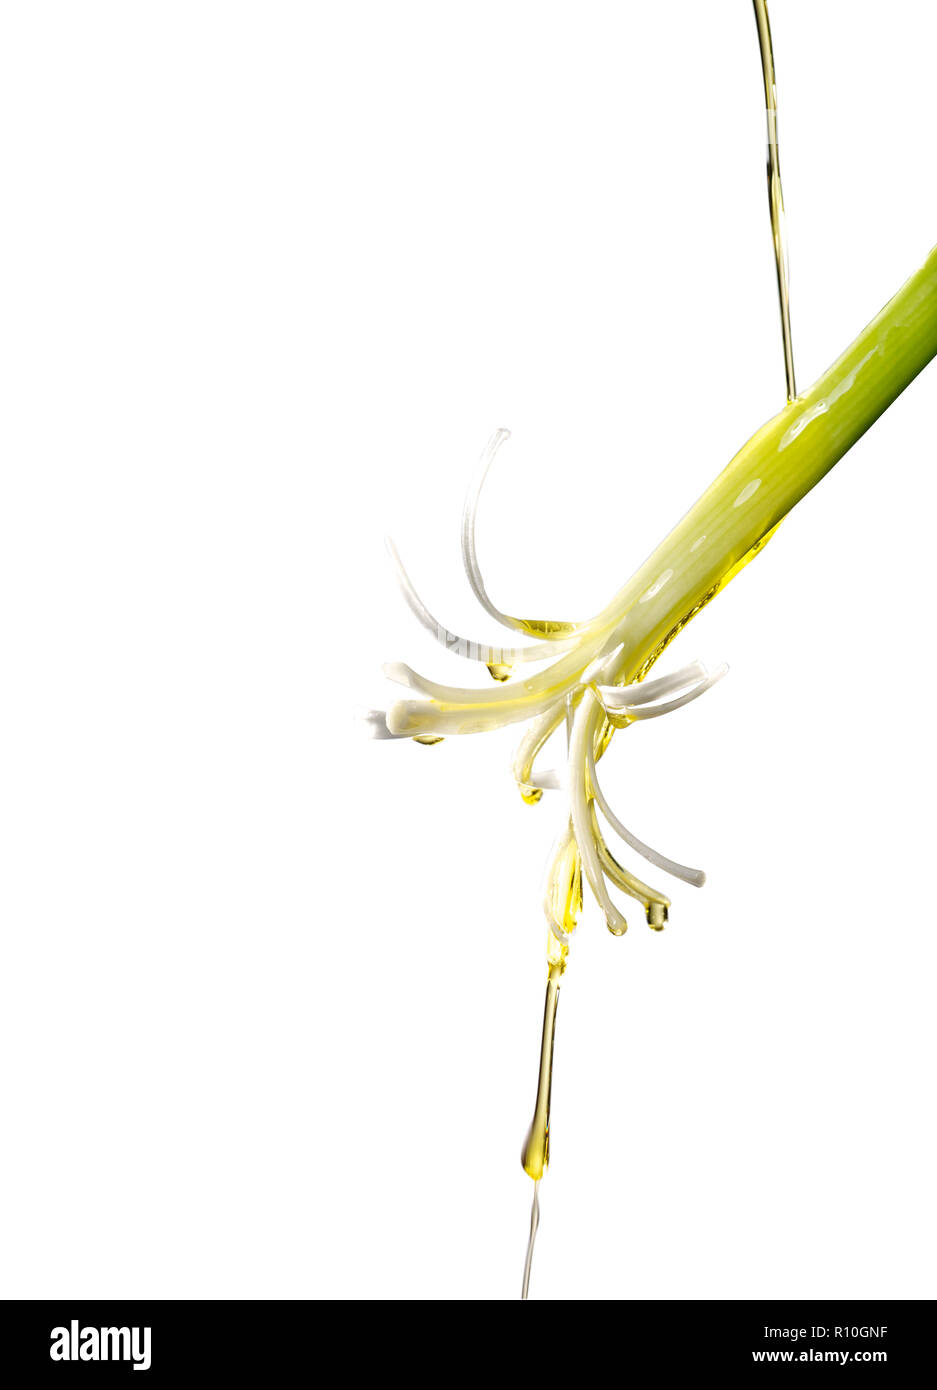 Nahaufnahme der Frühlingszwiebel mit Öl gießen, weißer Hintergrund Stockfoto